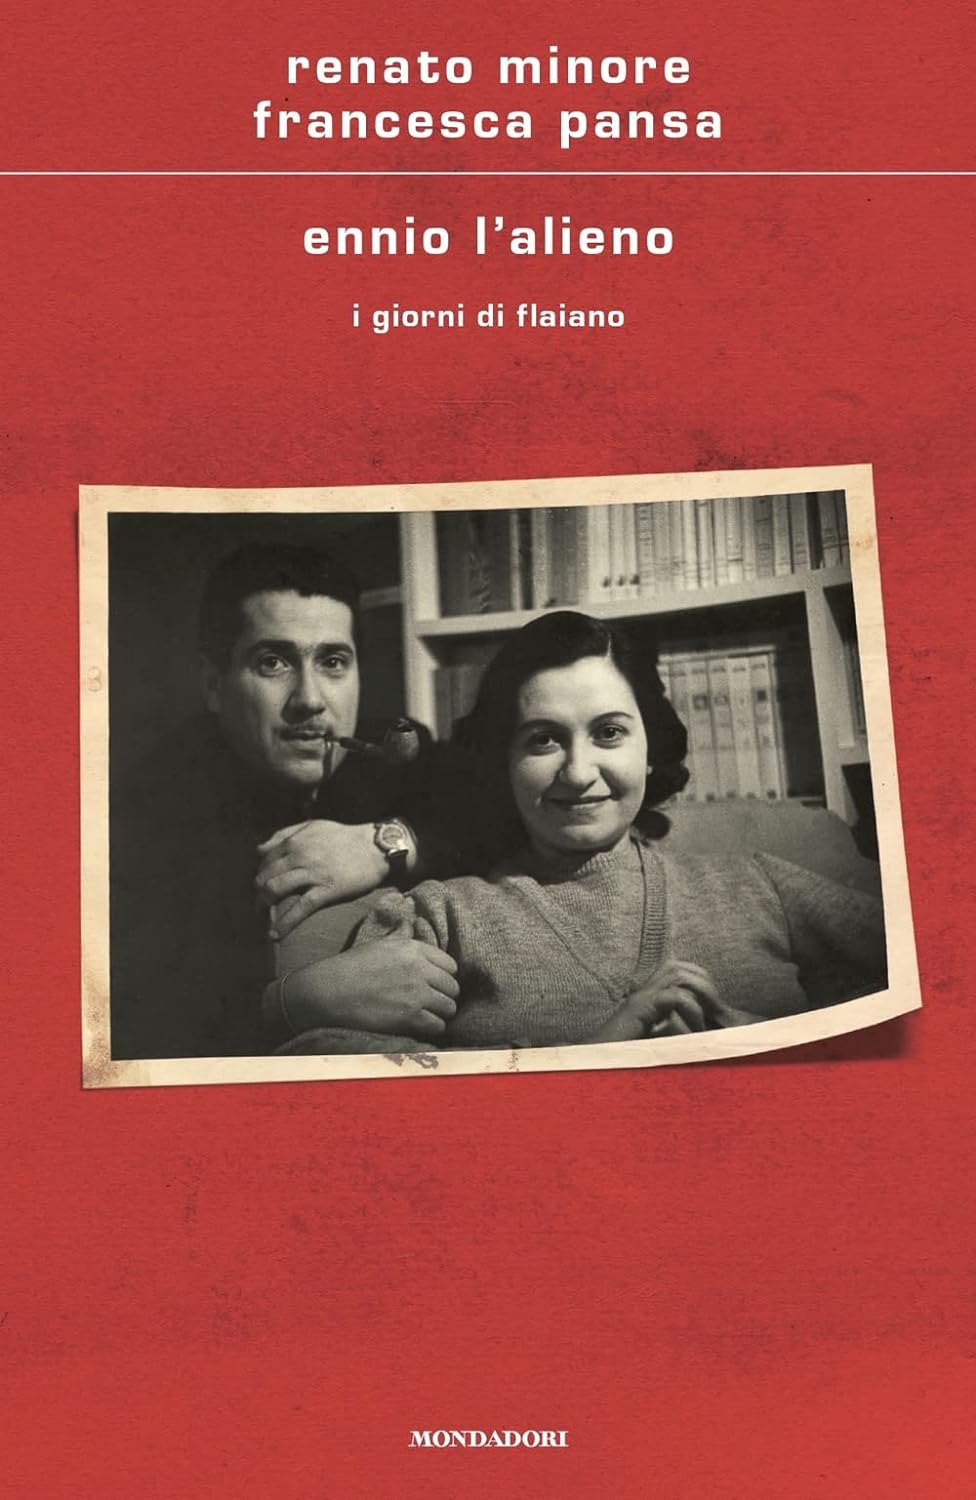 Copertina del libro "Ennio, l'alieno" di Renato Minore e Francesca Pansa (Mondadori, 2022)